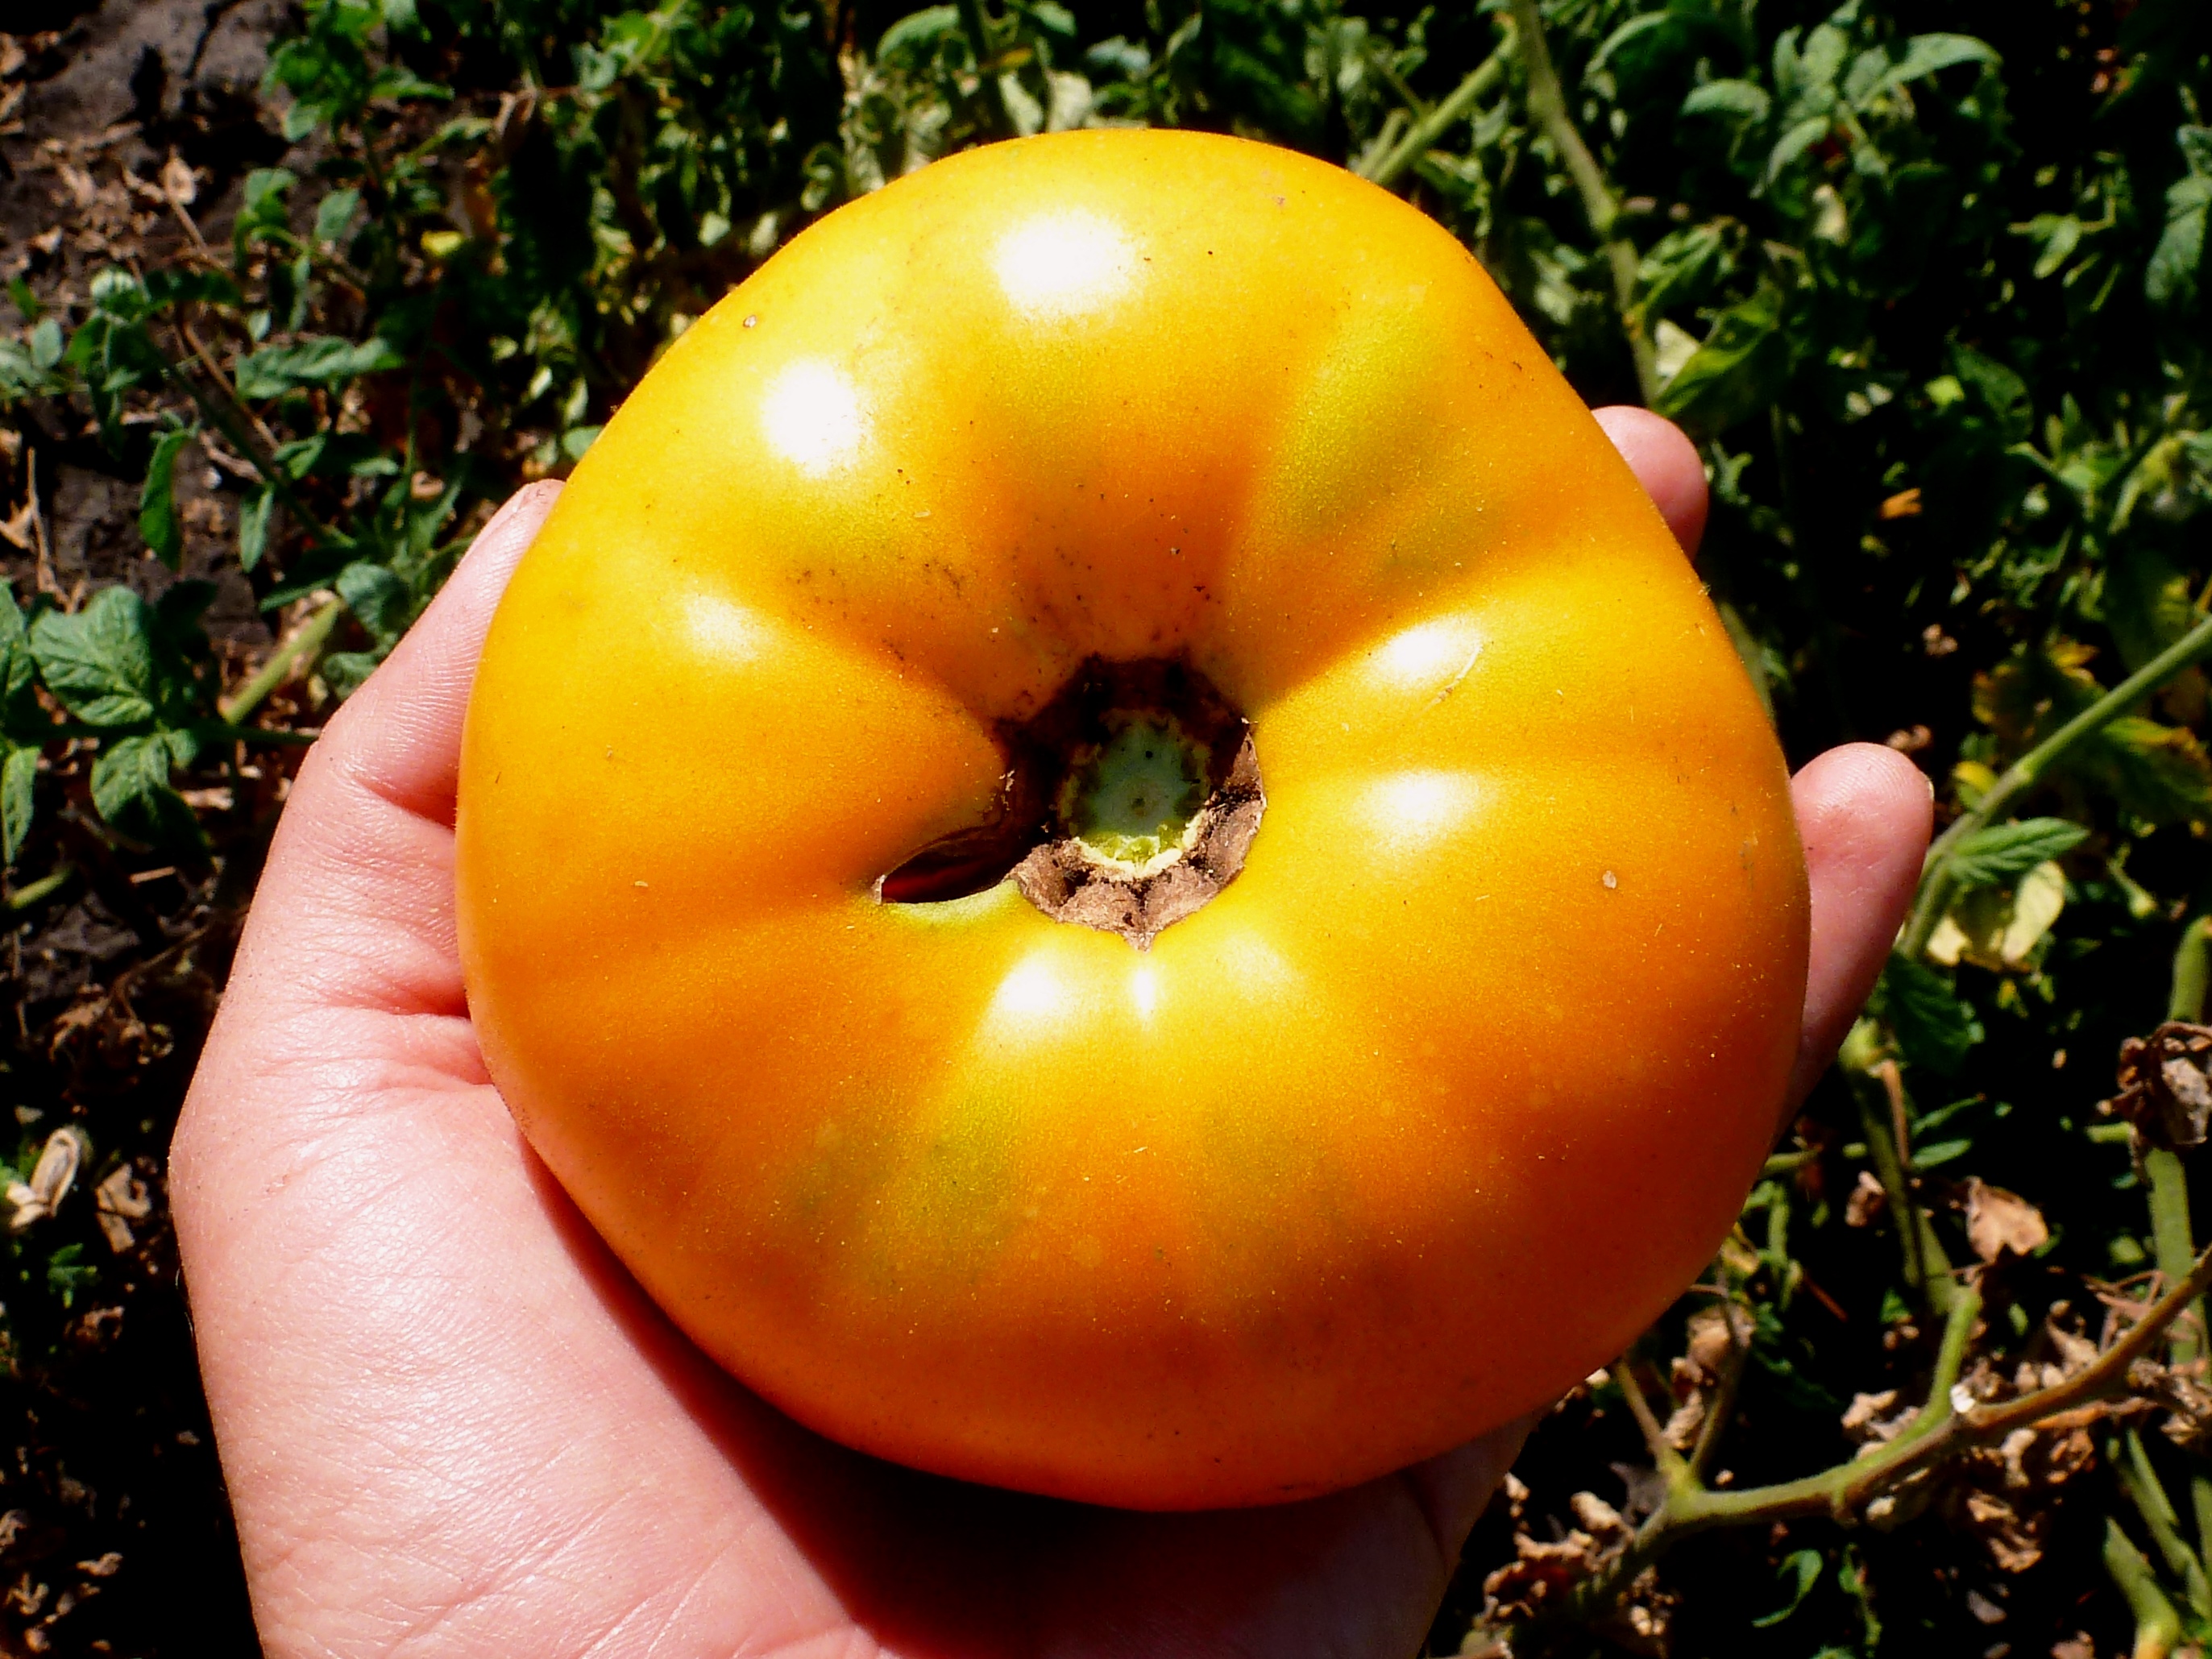 сорт томатов орлиный клюв фото